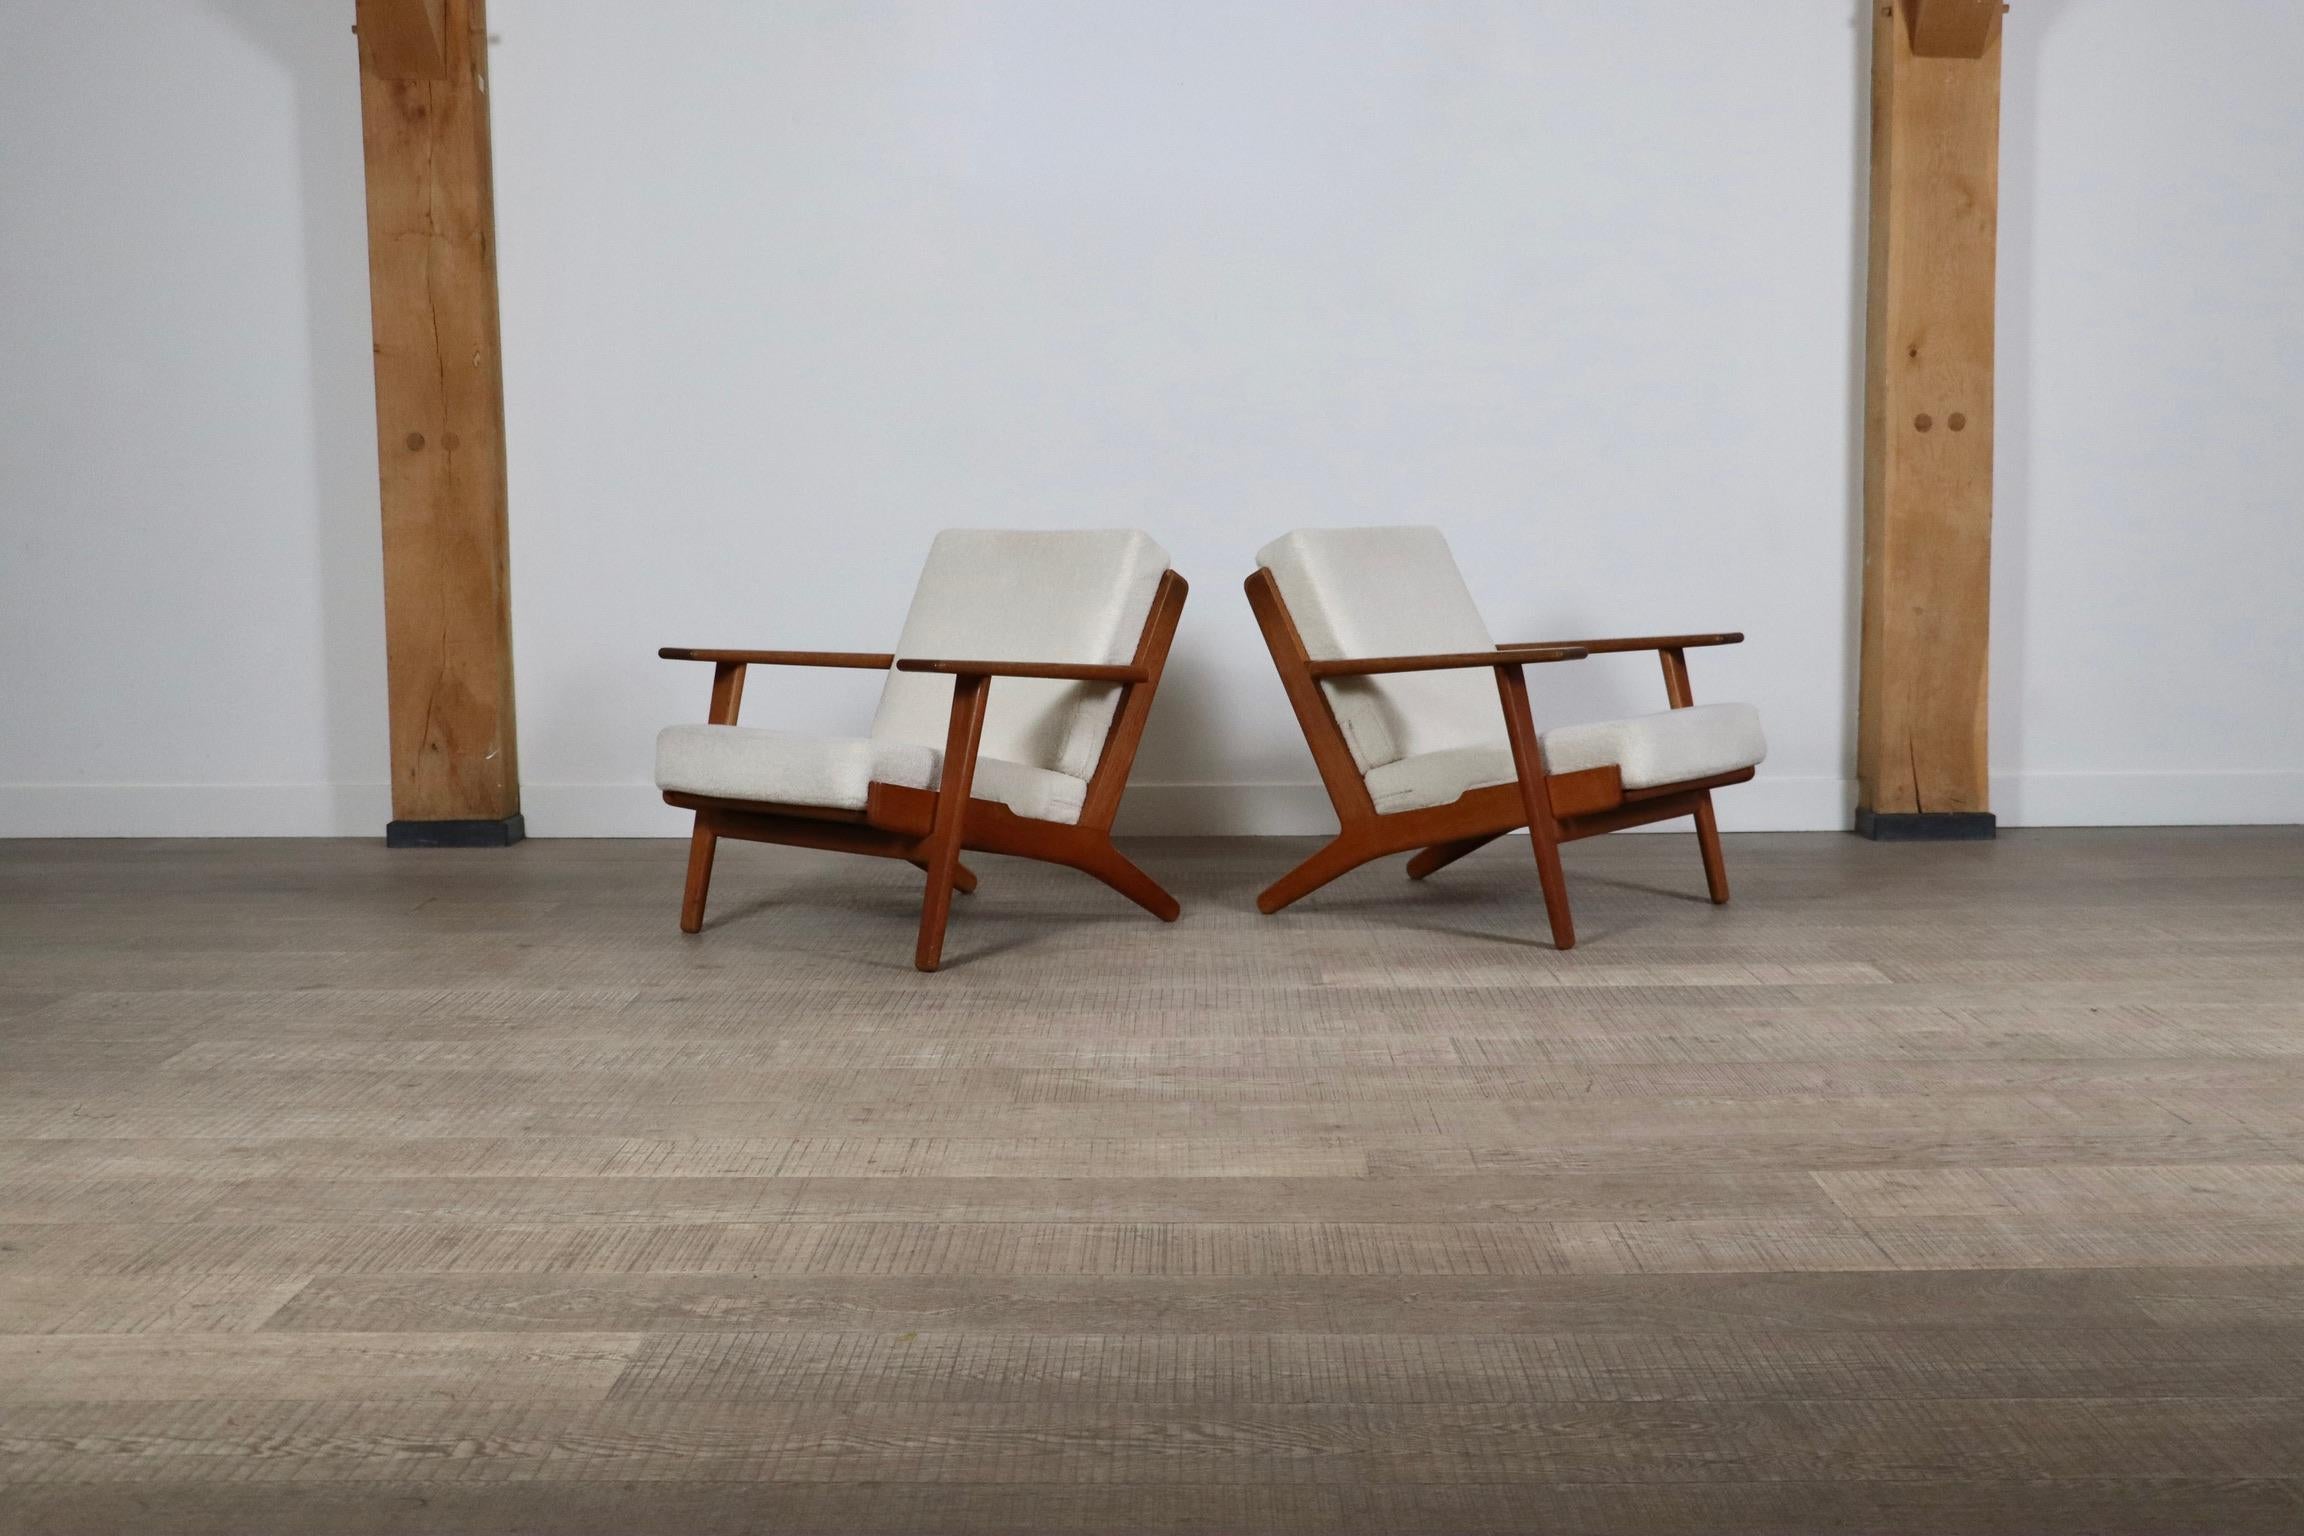 Belle paire de fauteuils GE290 de Hans Wegner pour GETAMA, années 1950. Structure en chêne massif avec coussins à ressorts d'origine nouvellement recouverts d'un tissu bouclé pour ajouter au confort du design. Ce modèle est également connu sous le